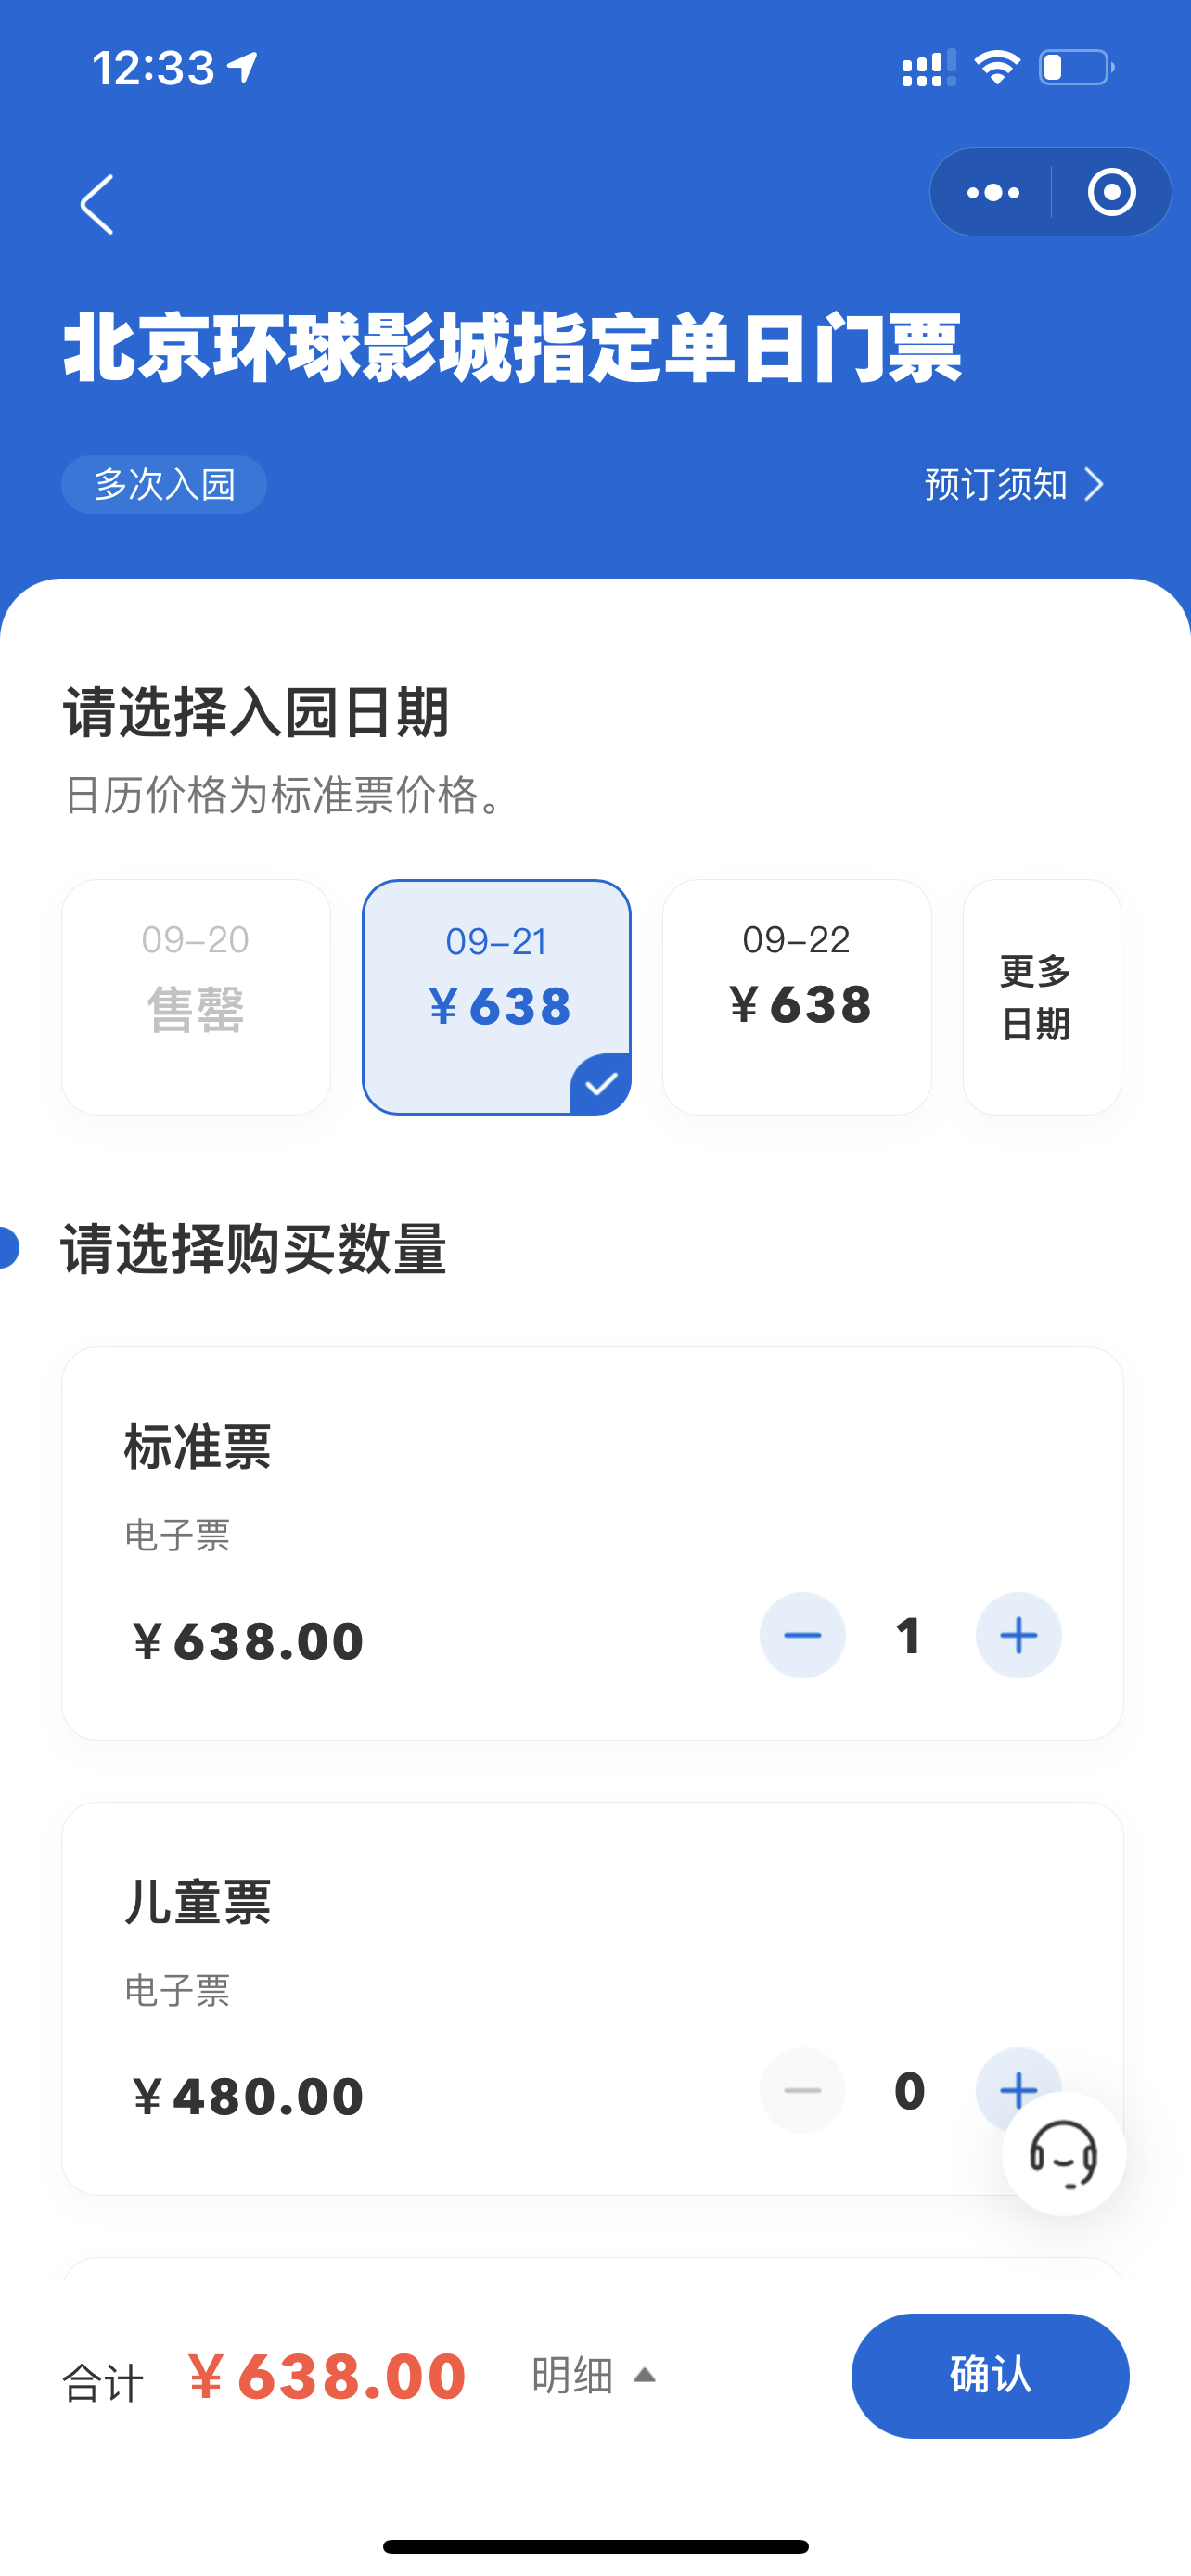 开票后33分钟，北京环球度假区官方小程序可正常购票。